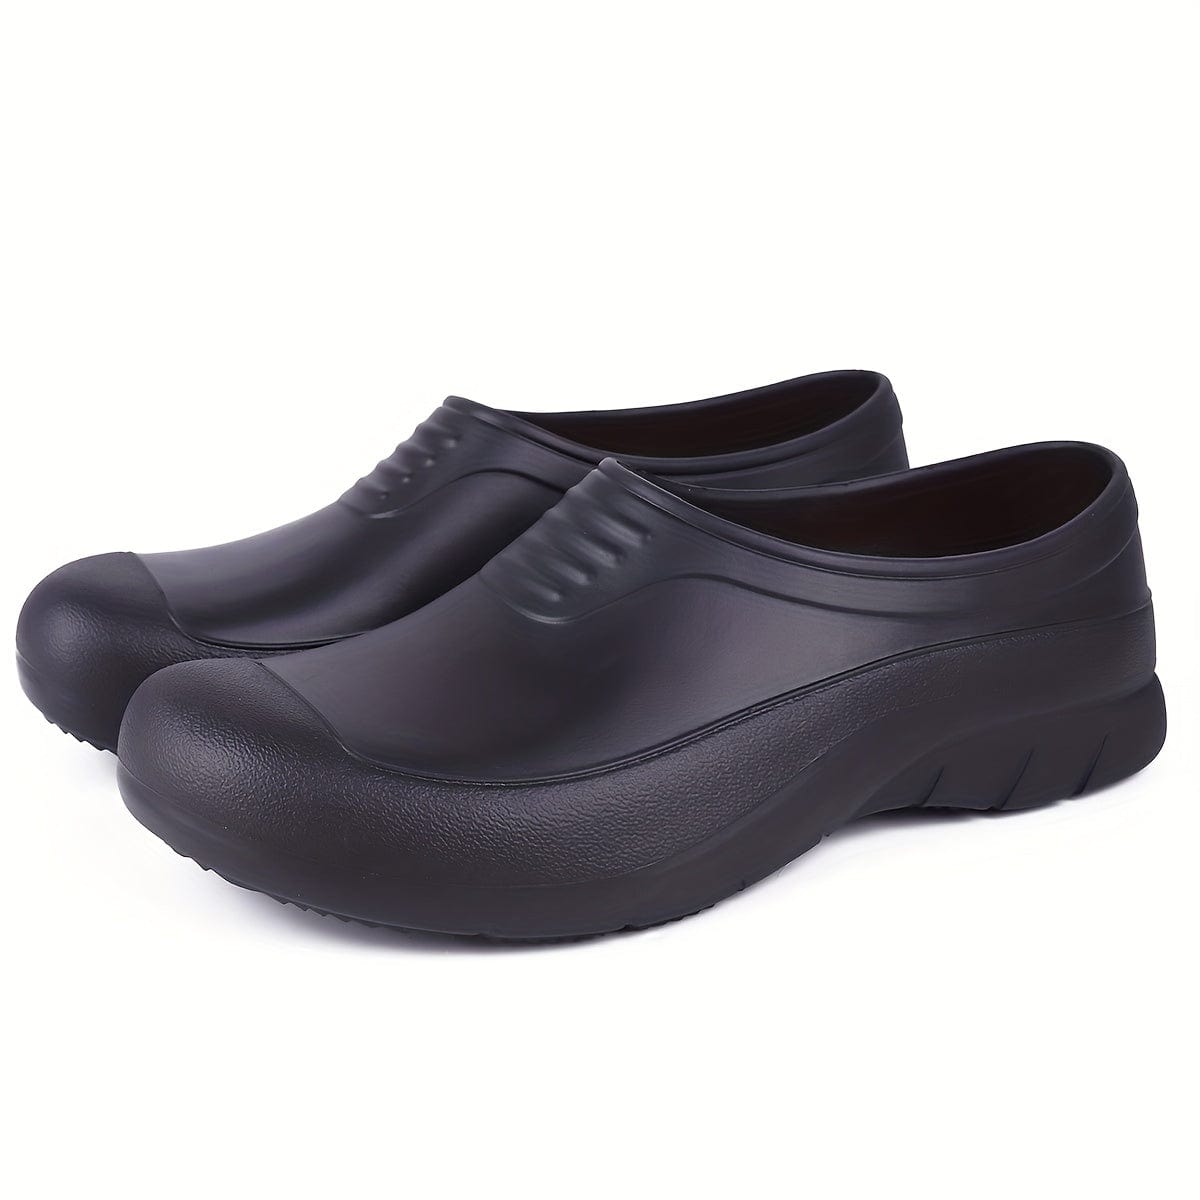 Men's Chef Shoes Food Service Restaurant Shoes, Slip Resistant Oil Resistant Shoes For Kitchen, Nurse Shoes Work Shoes